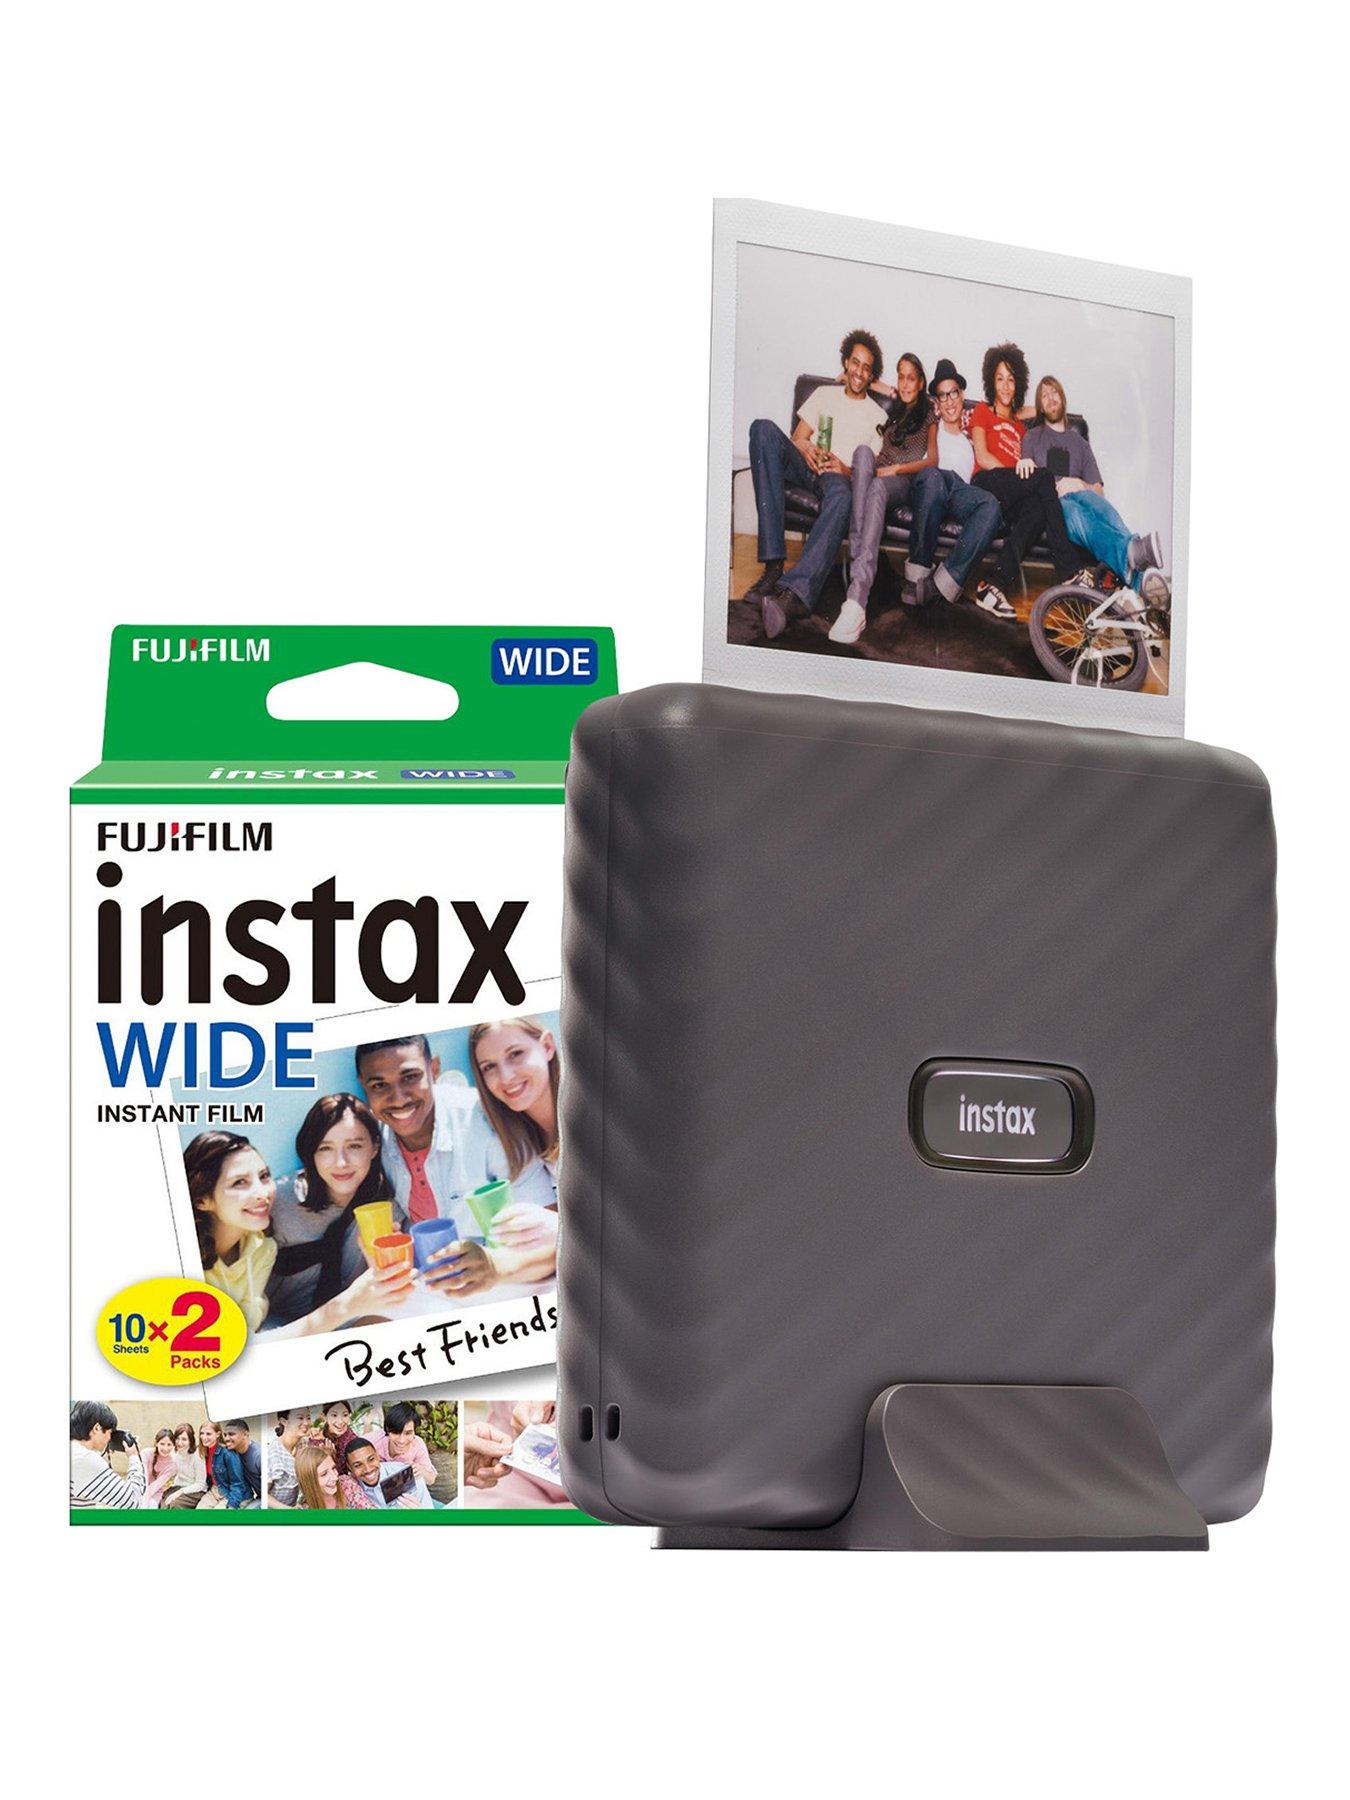 INSTAX WIDE 300 - INSTAX by Fujifilm (UK)